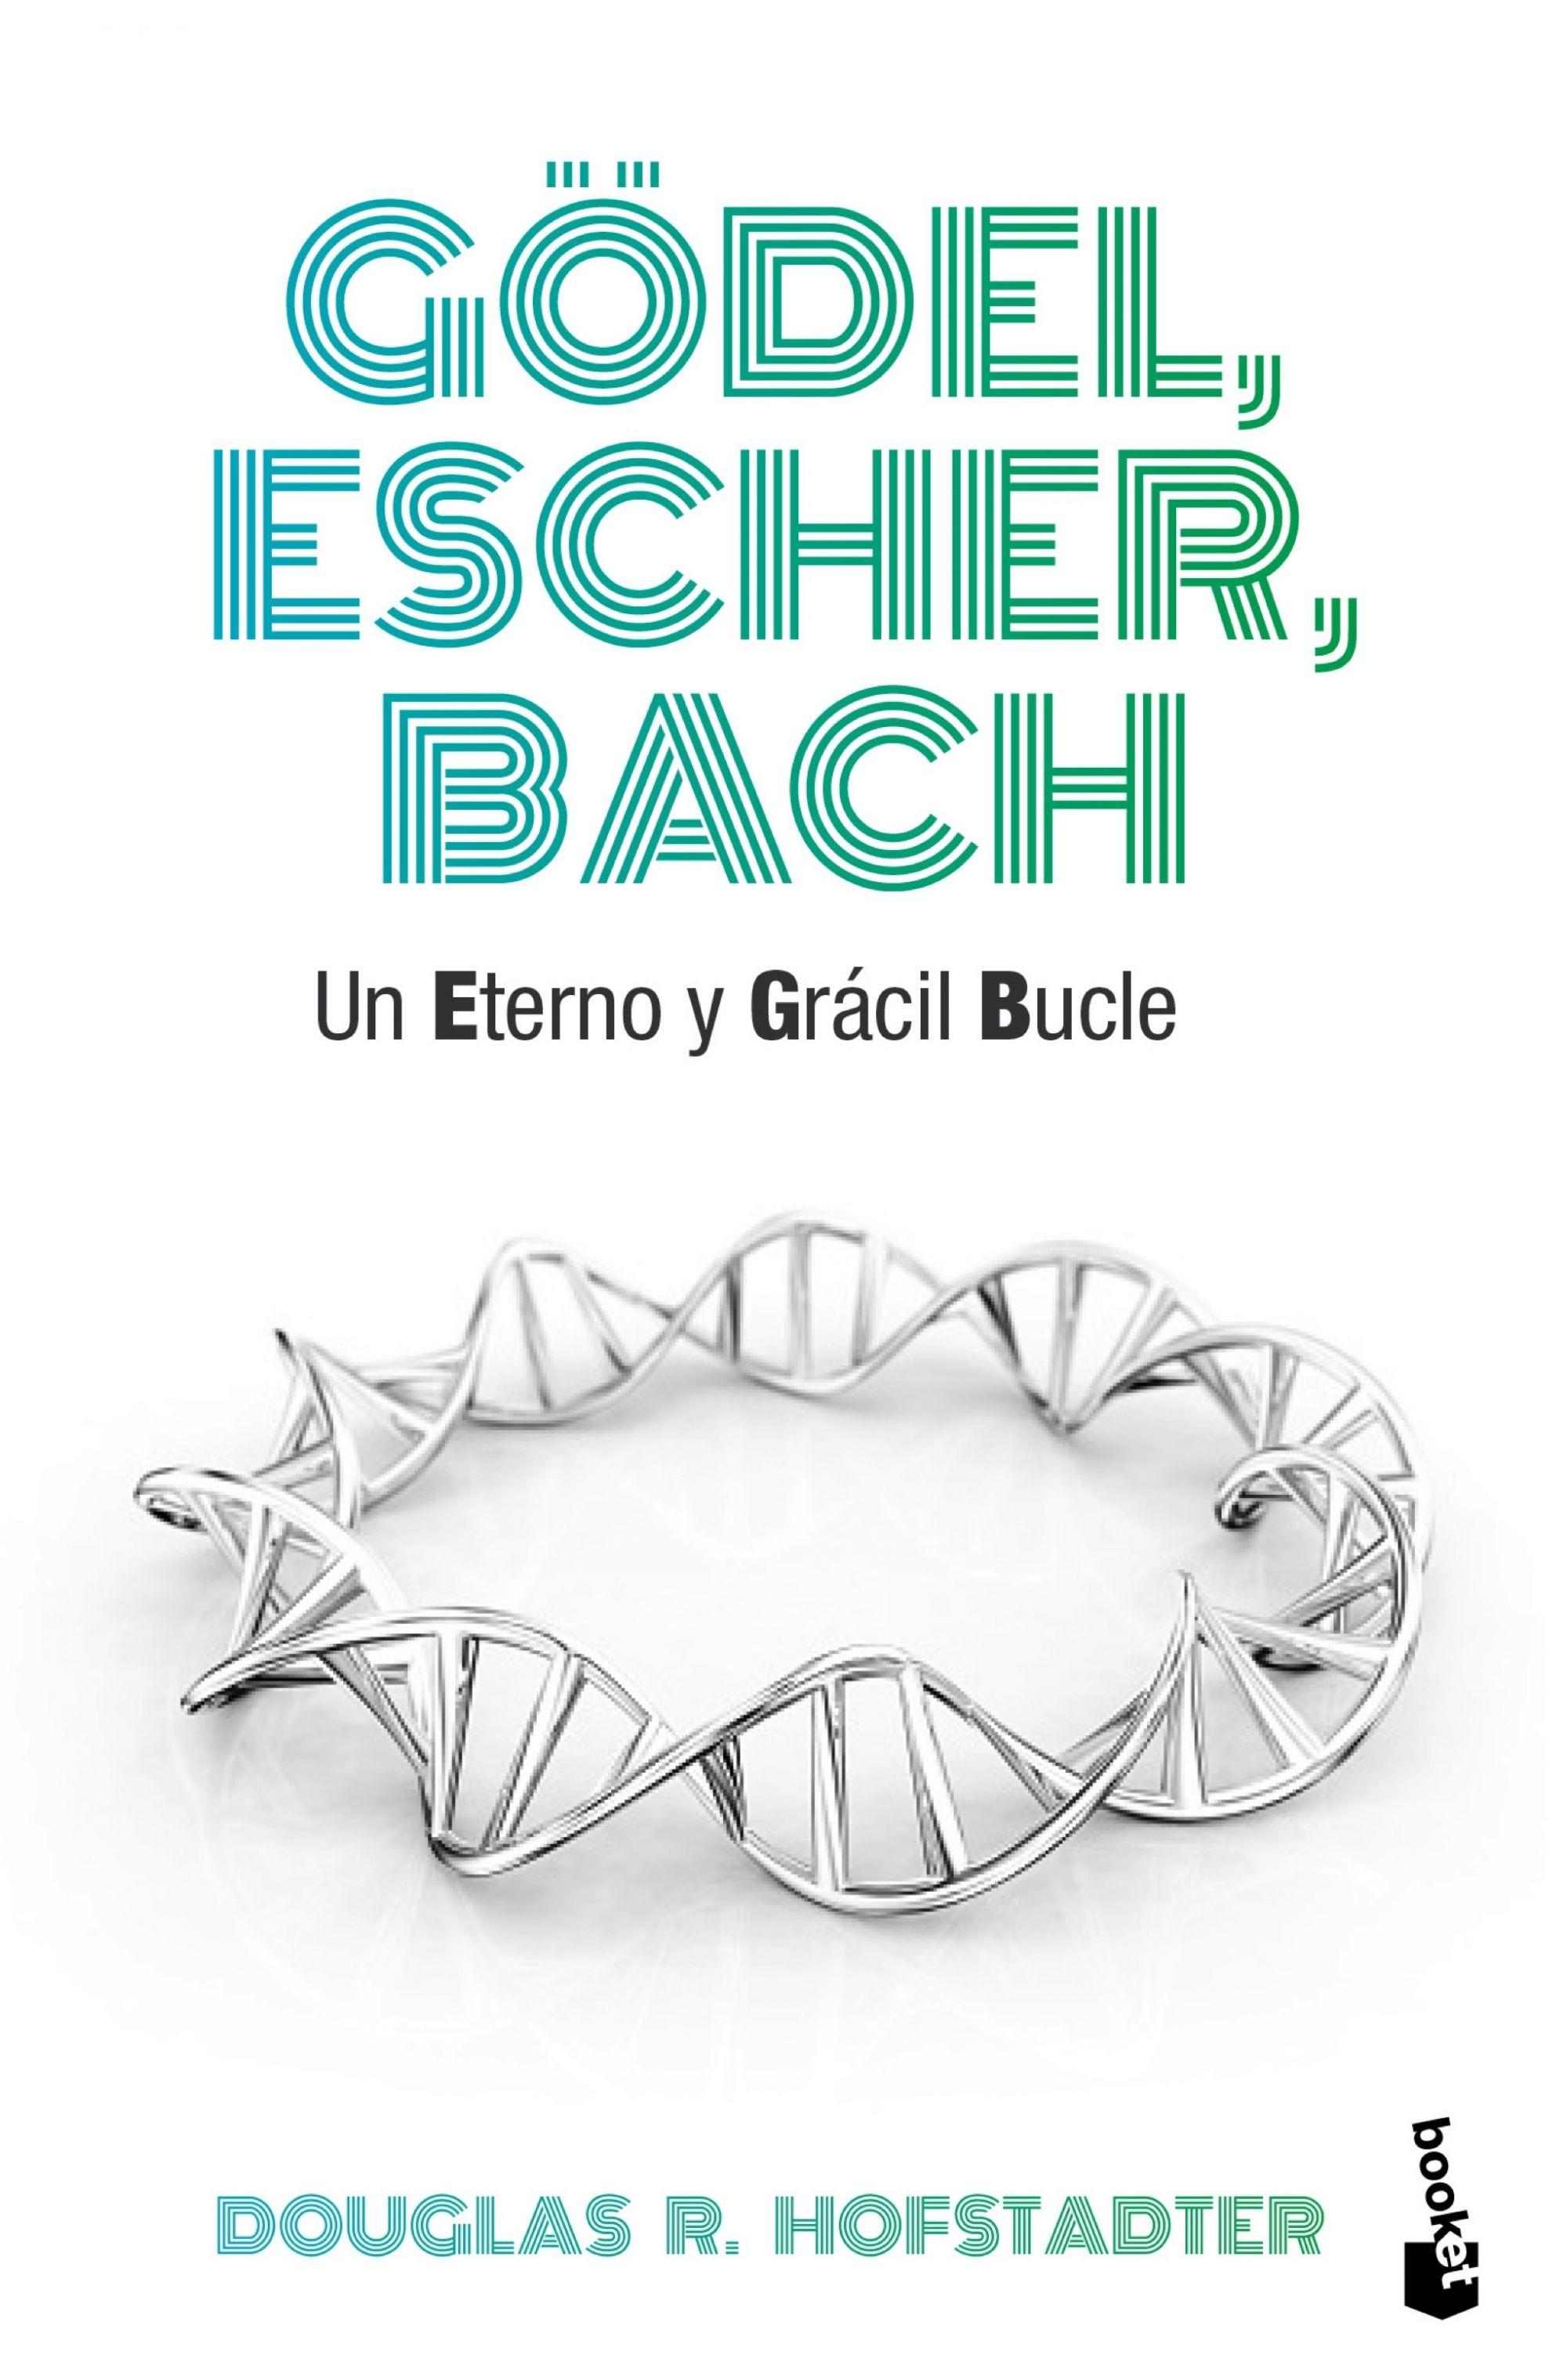 G del, Escher, Bach "Un eterno y grácil bucle"